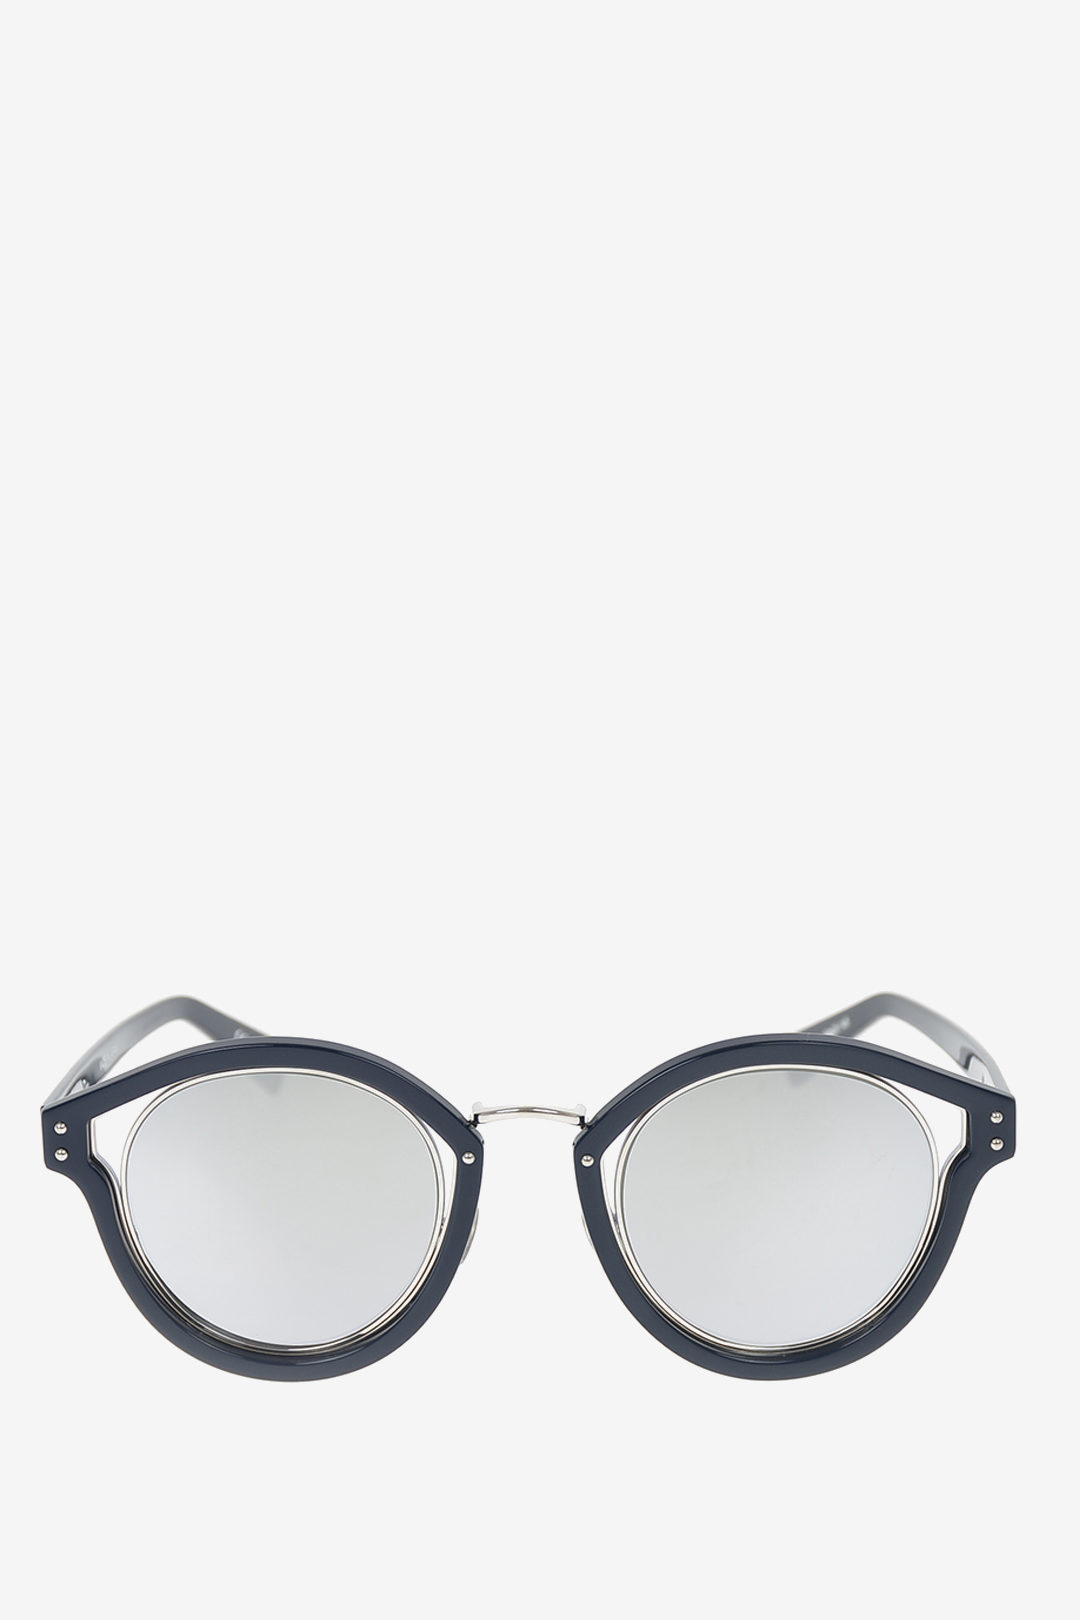 dior elliptic sunglasses